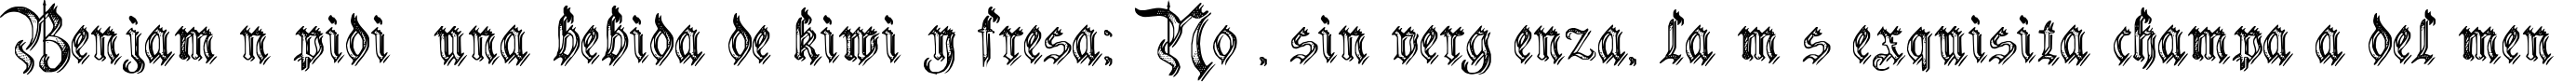 Пример написания шрифтом Charterwell No5 текста на испанском